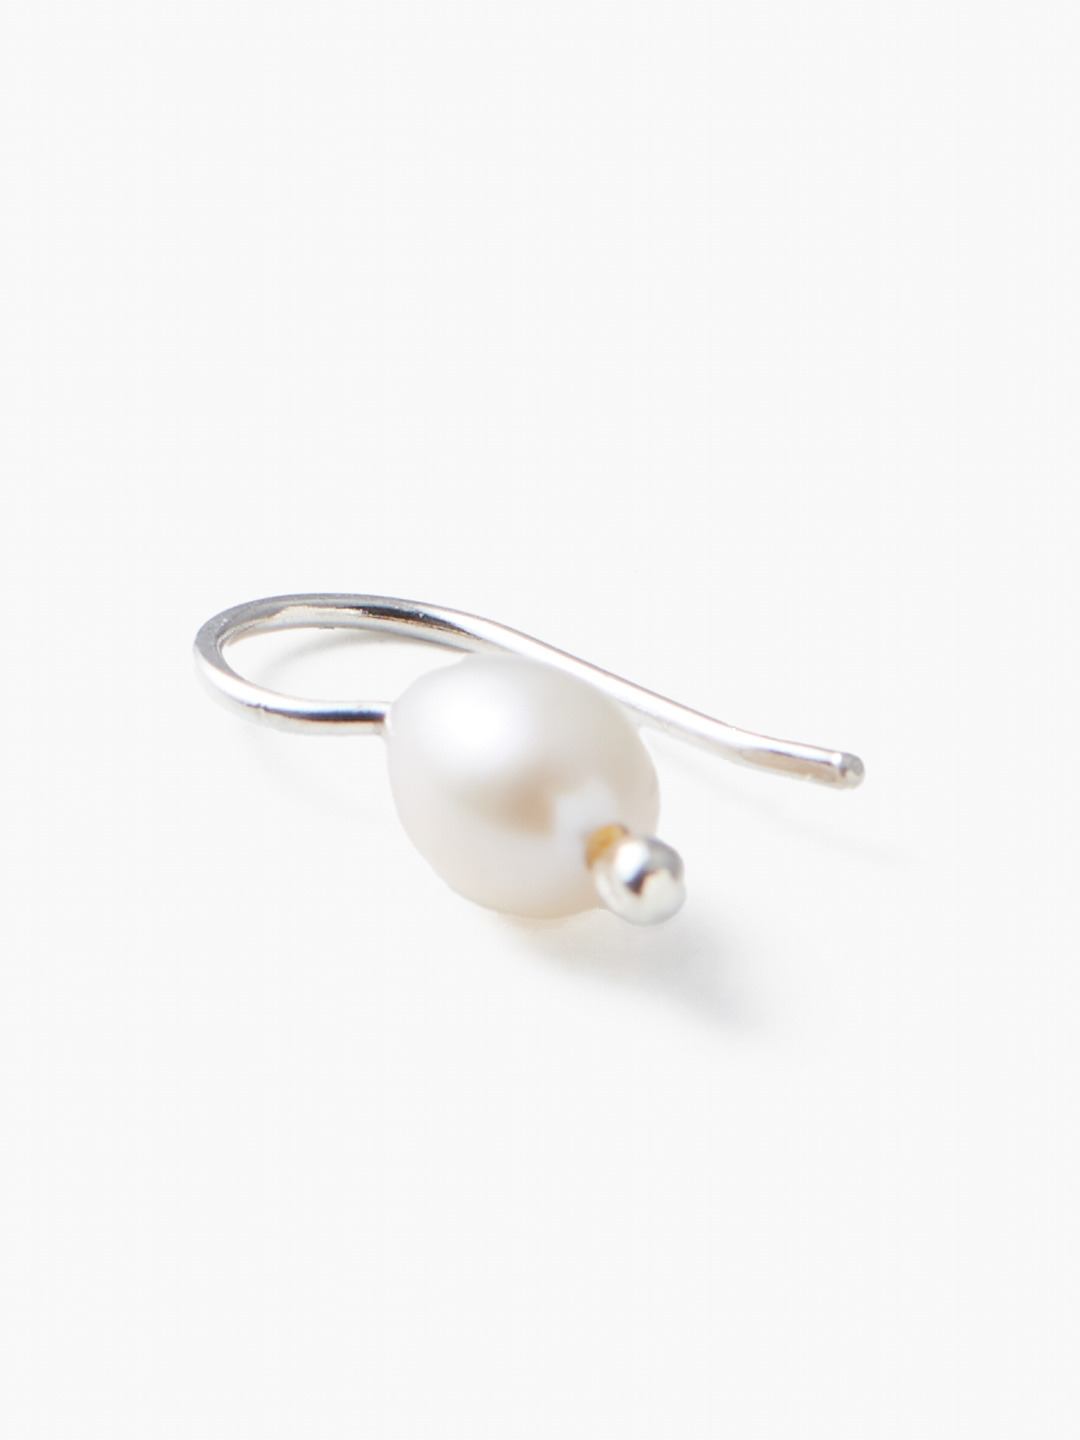 Mermaid Single Pierced Earring - White